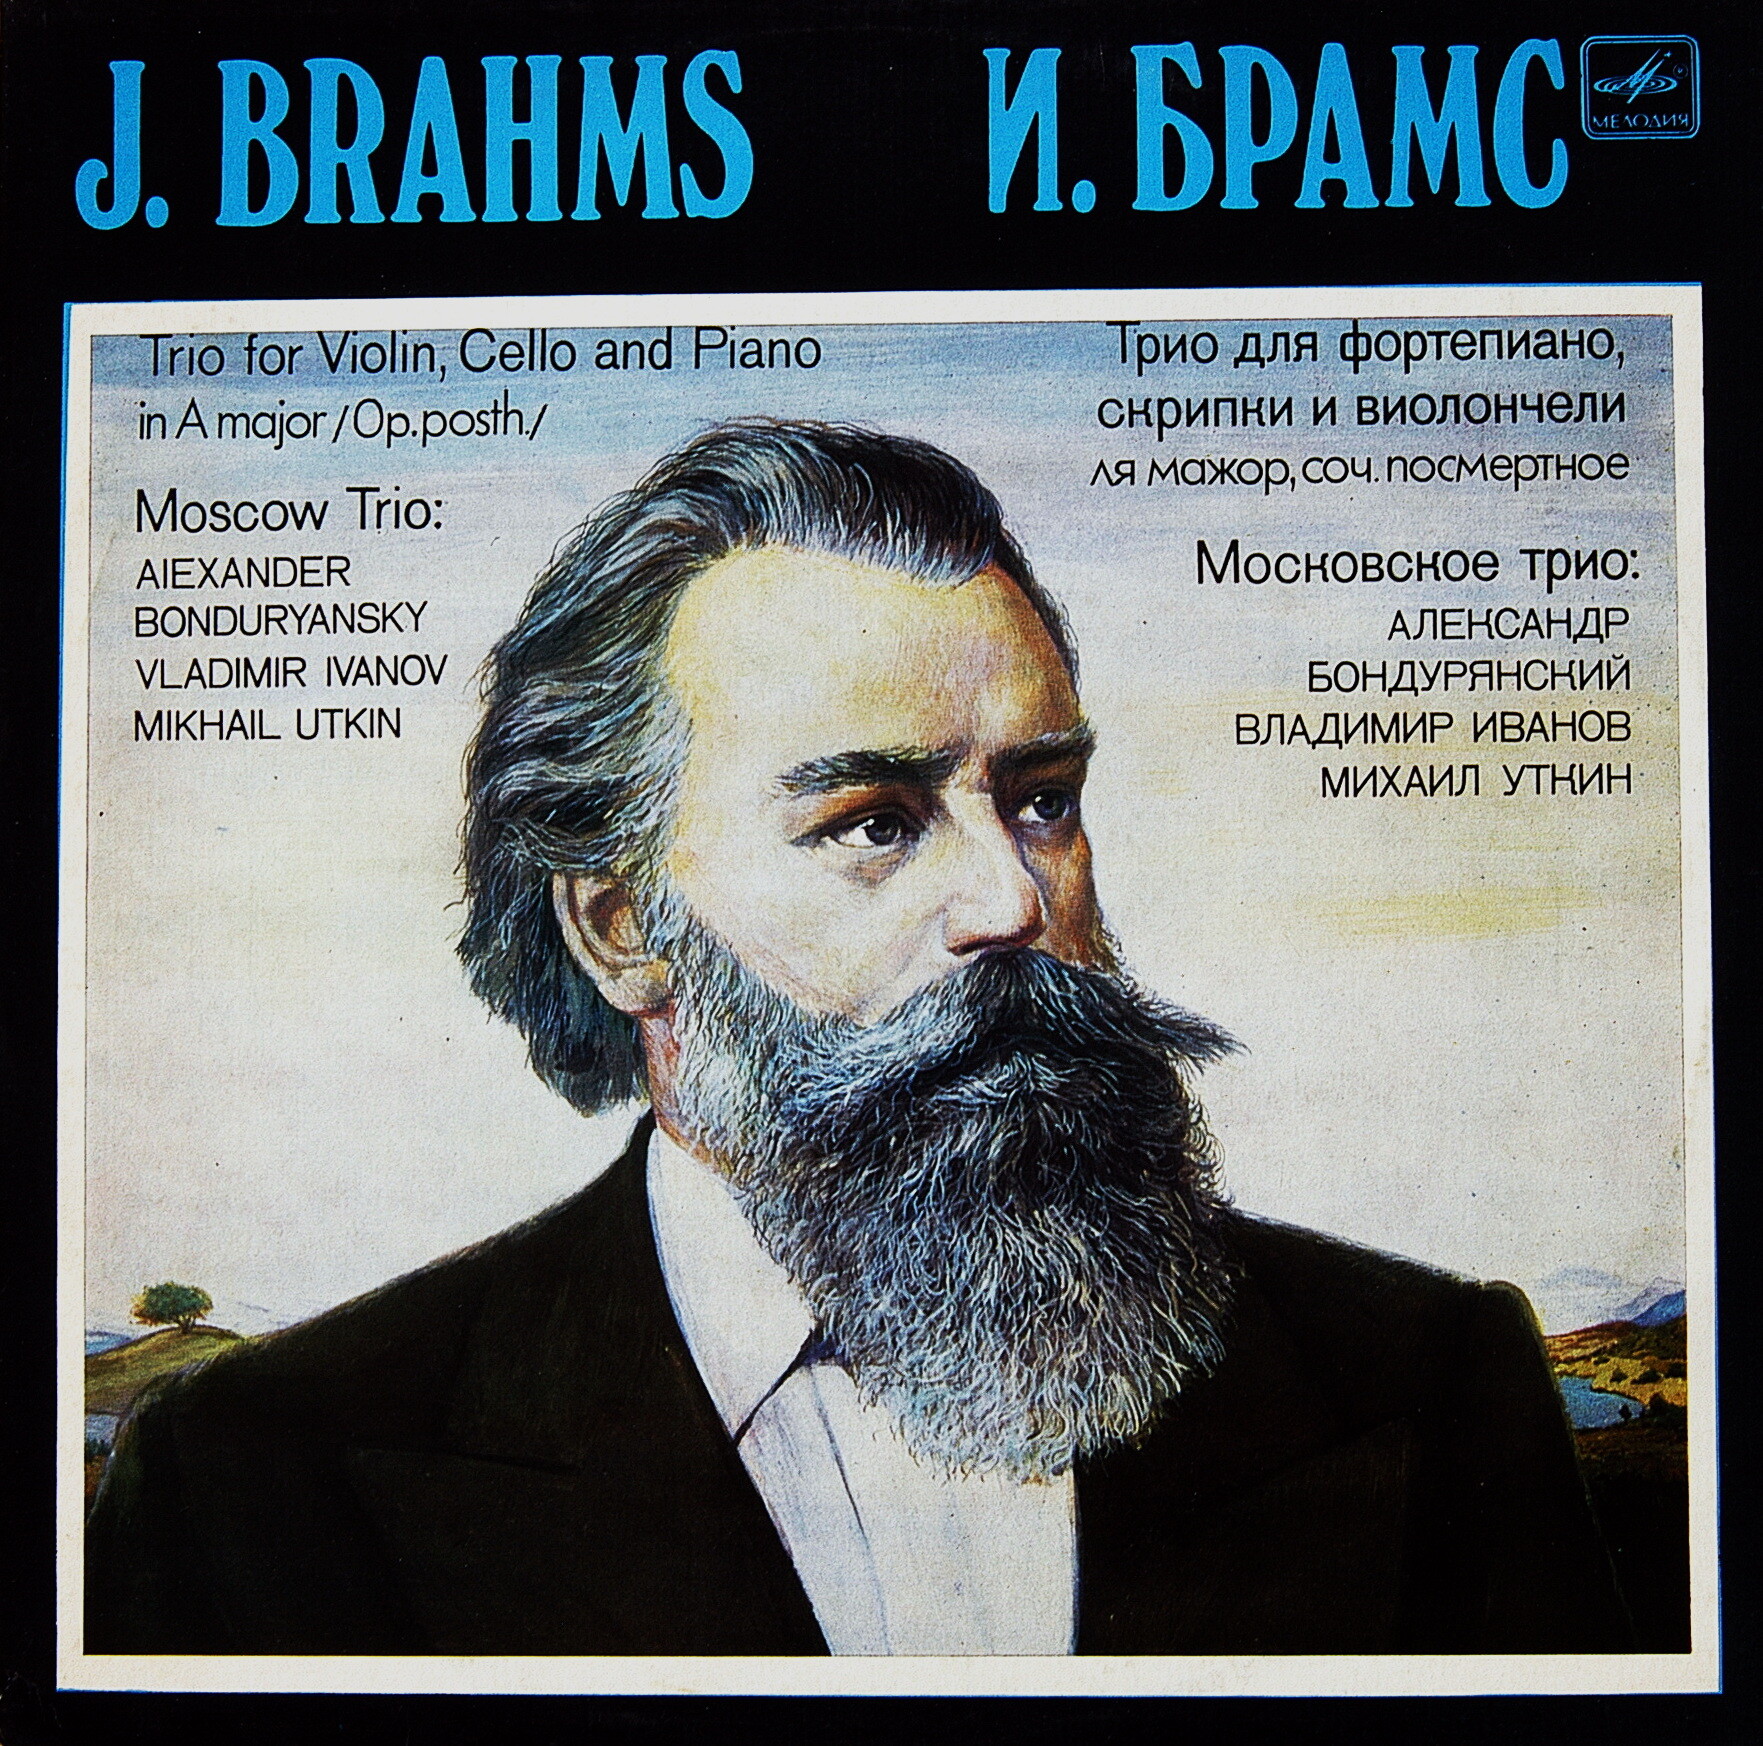 И. БРАМС: Трио для ф-но, скрипки и виолончели ля мажор, соч. посмертное.